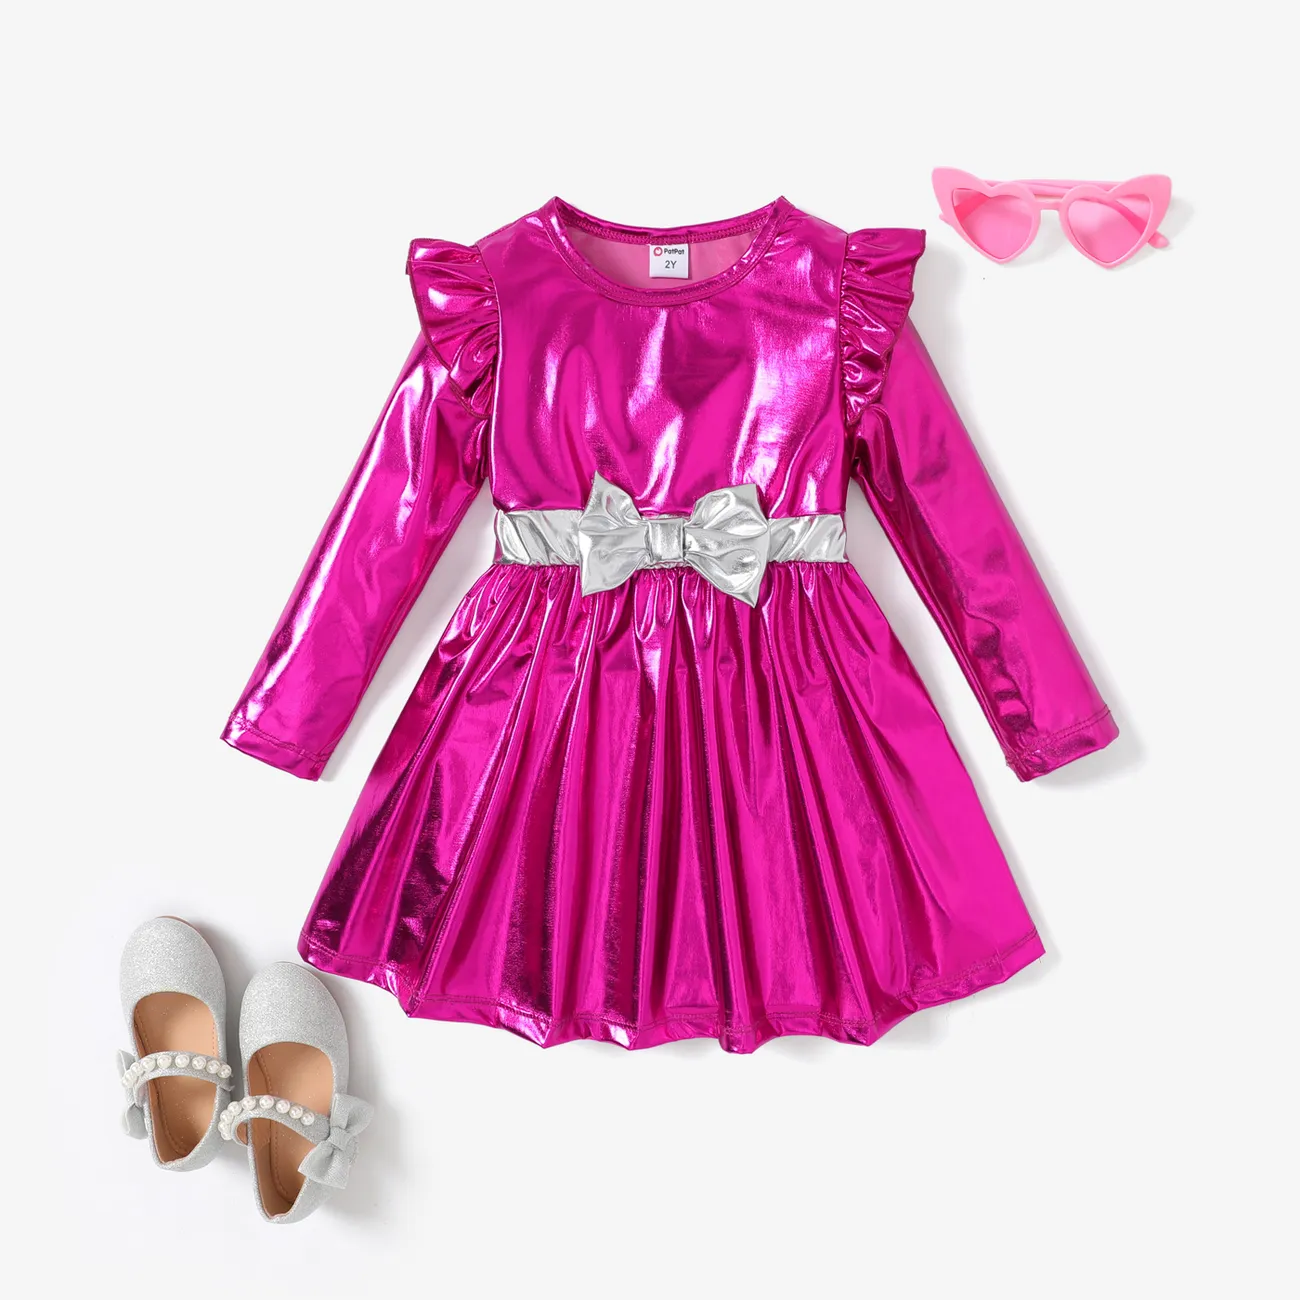 Toddler Girl Sweet Metallic Ruffled Dress Hot Pink big image 1